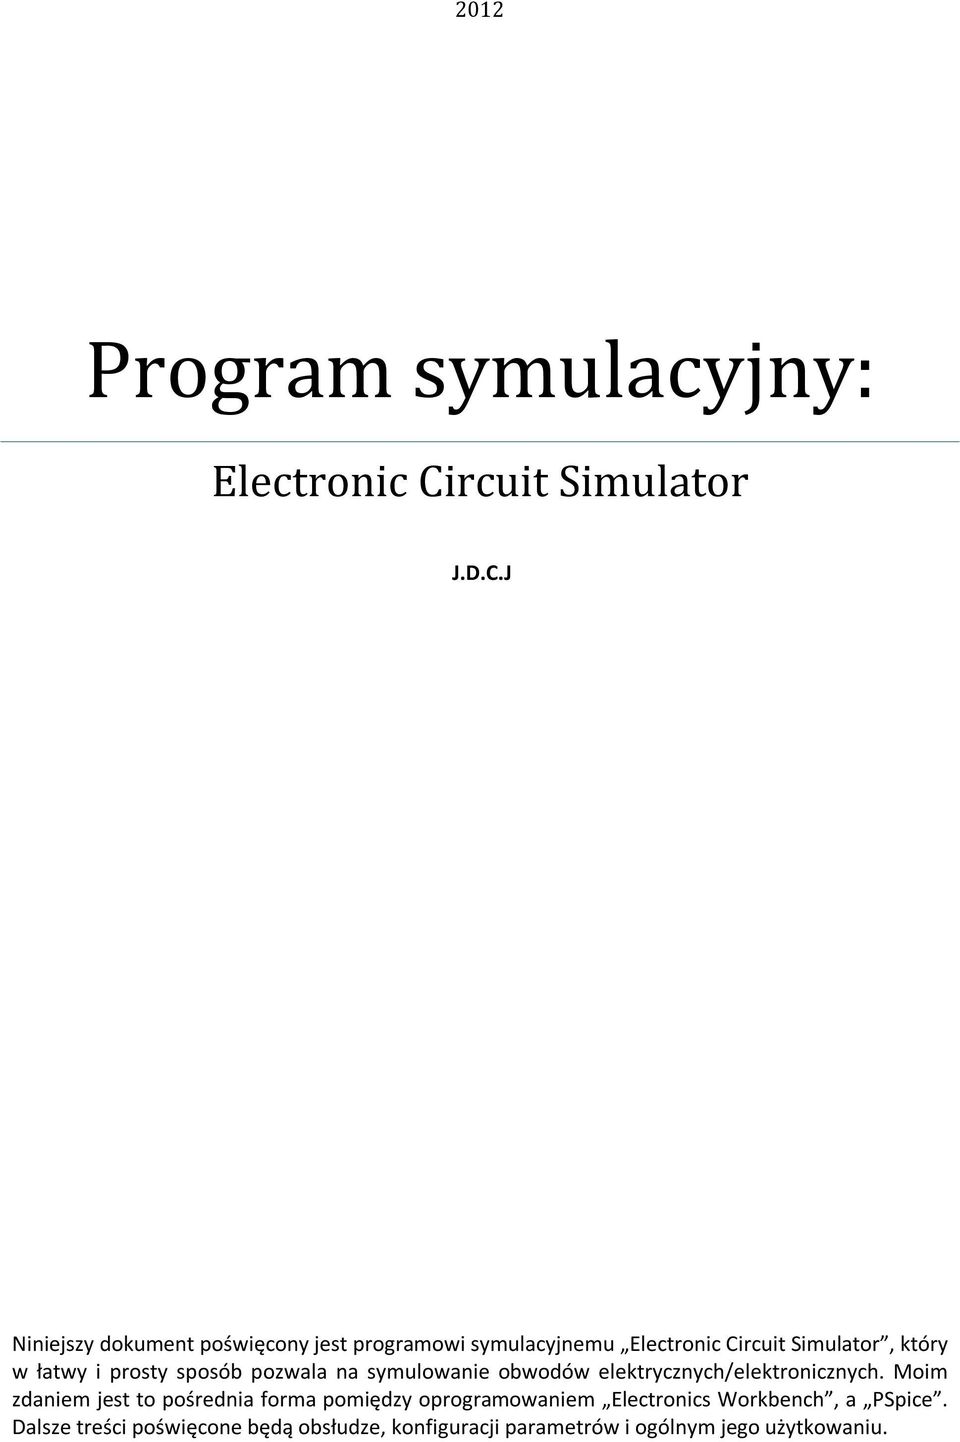 J Niniejszy dokument poświęcony jest programowi symulacyjnemu Electronic Circuit Simulator, który w łatwy i